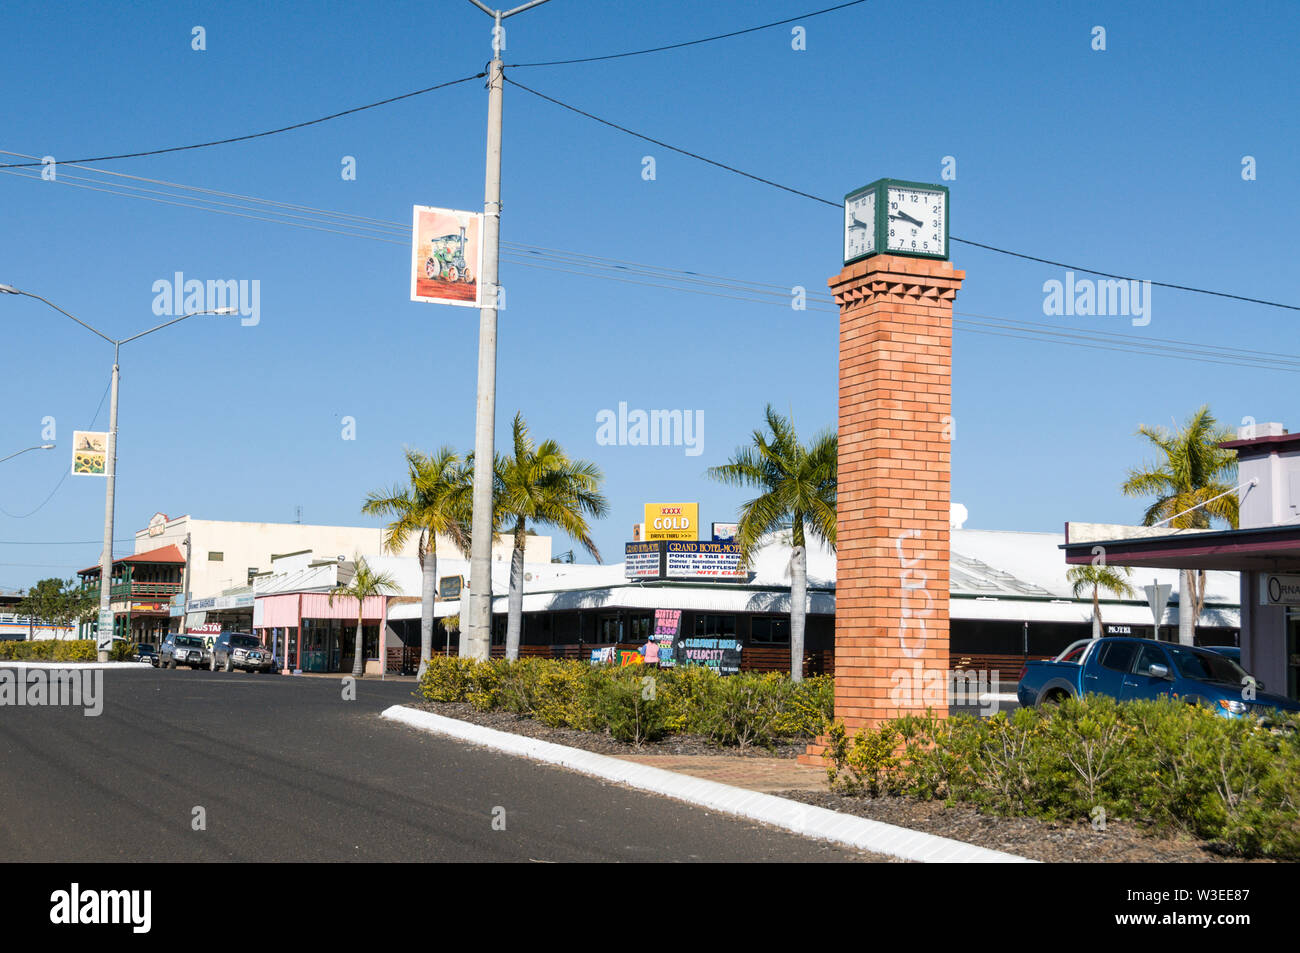 L'horloge de la ville se trouve dans le centre principale rue commerçante d'une petite ville agricole, Clermont en Central Queensland, Australie. Clermont est une petite Banque D'Images